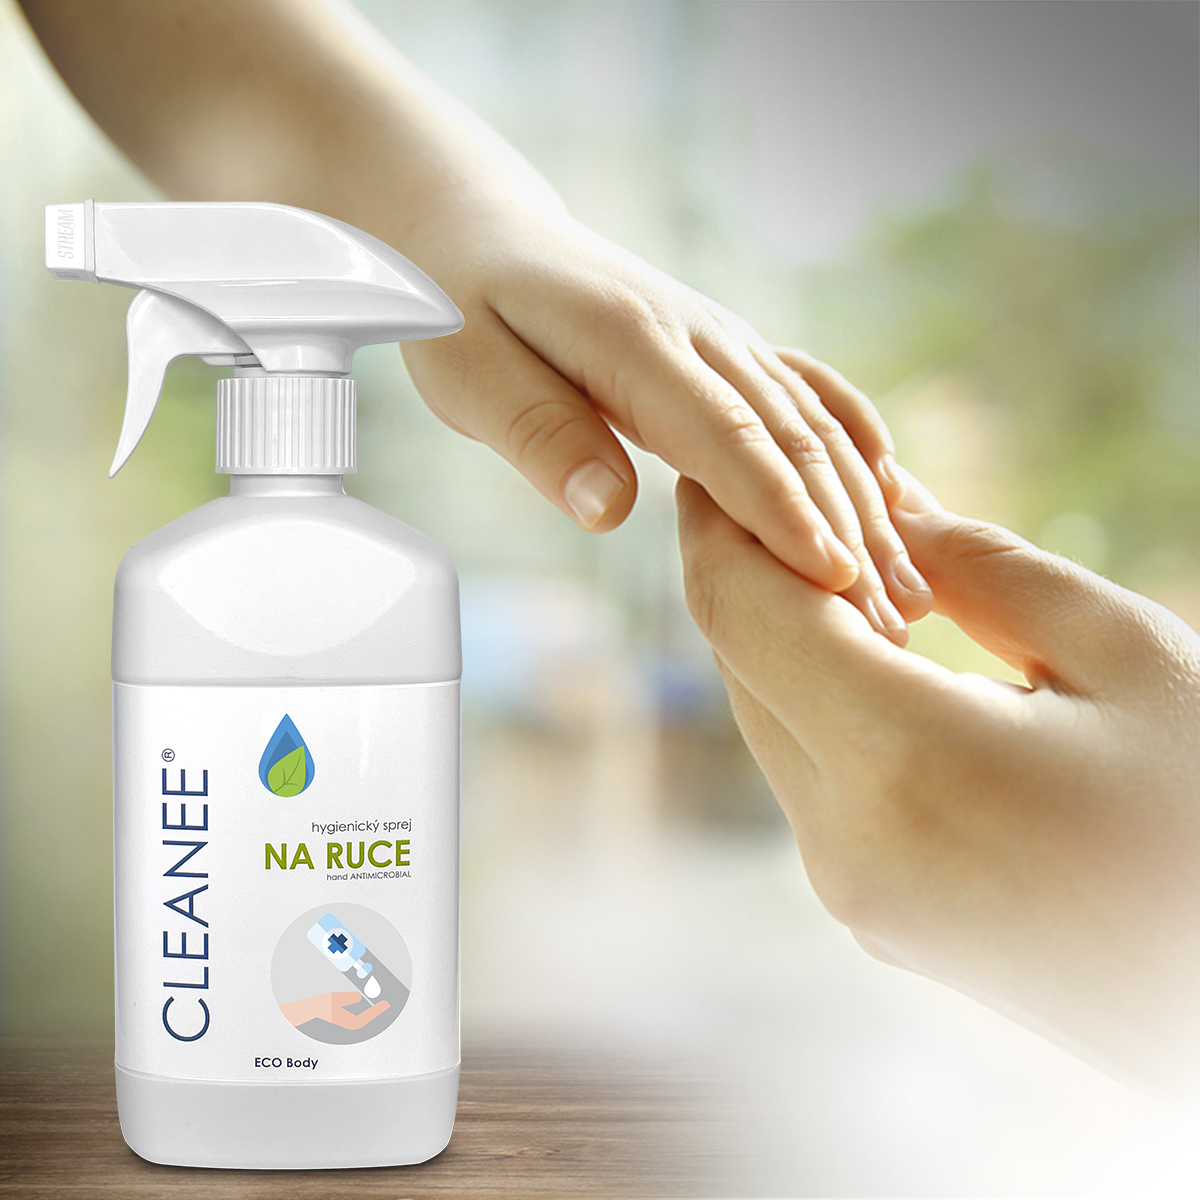 Přírodní hygienický sprej na ruce s ověřenou účinností i bez chemikálií